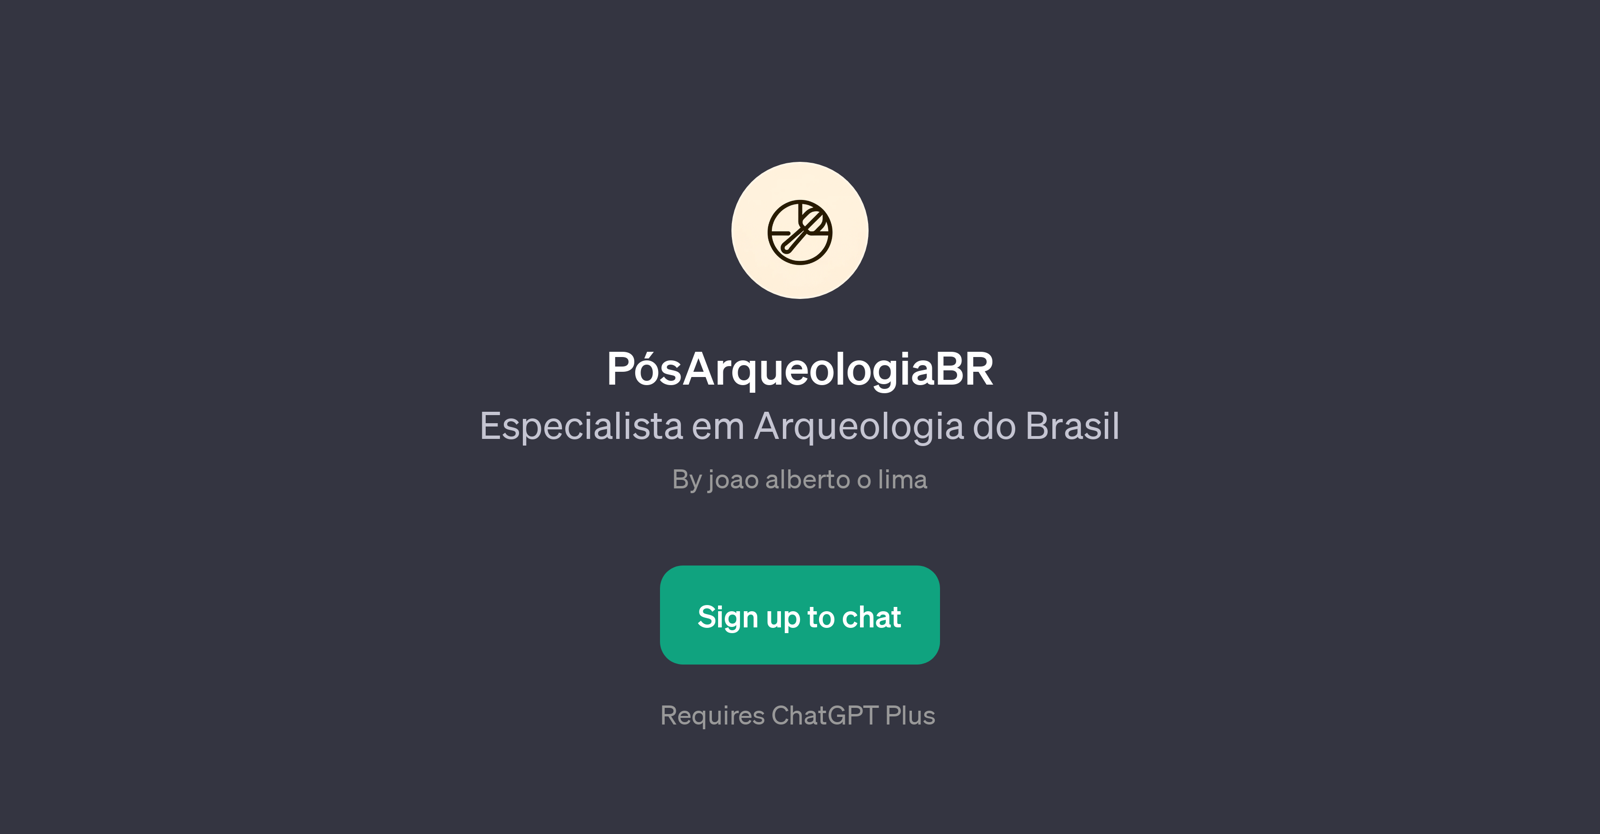 PsArqueologiaBR website